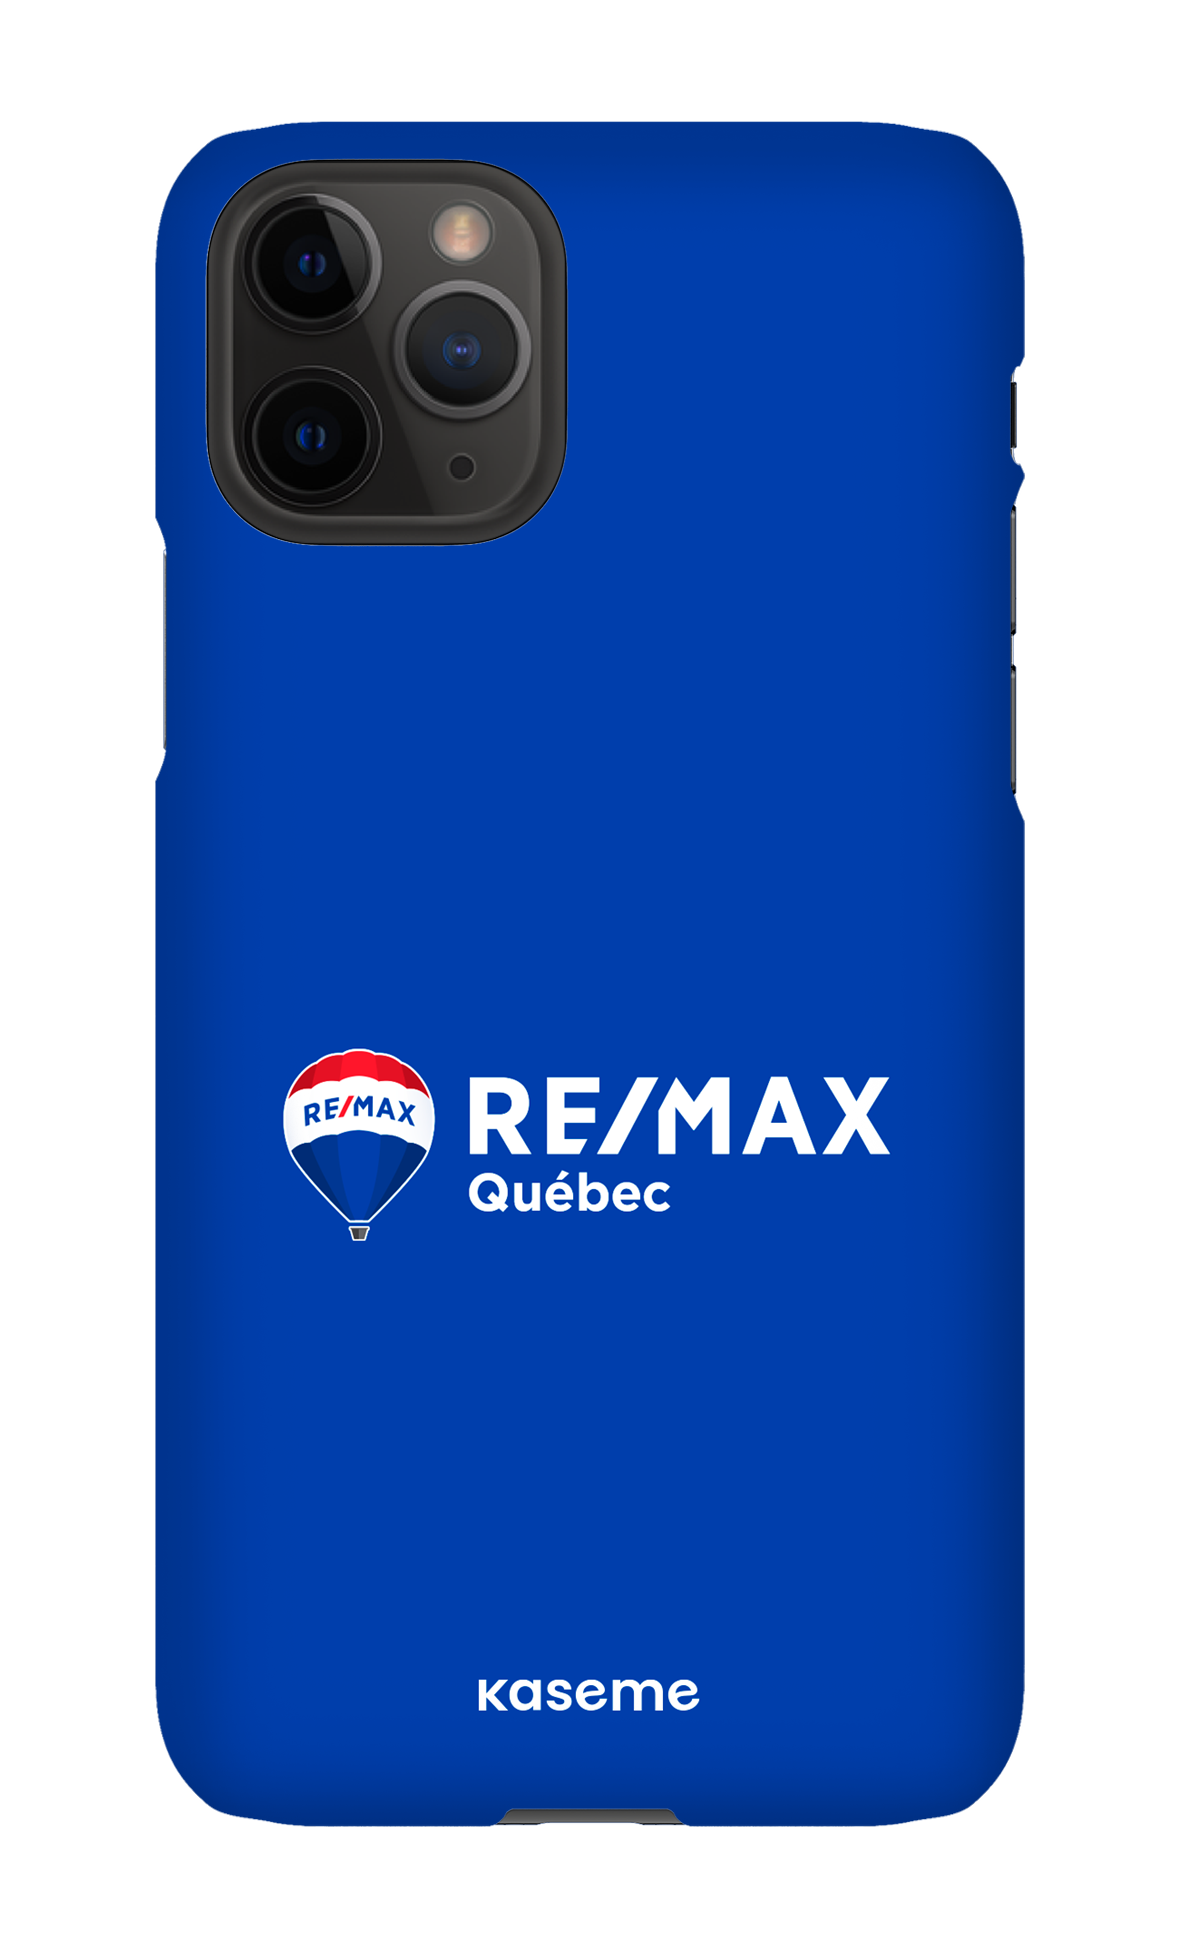 Remax Québec Bleu - iPhone 11 Pro